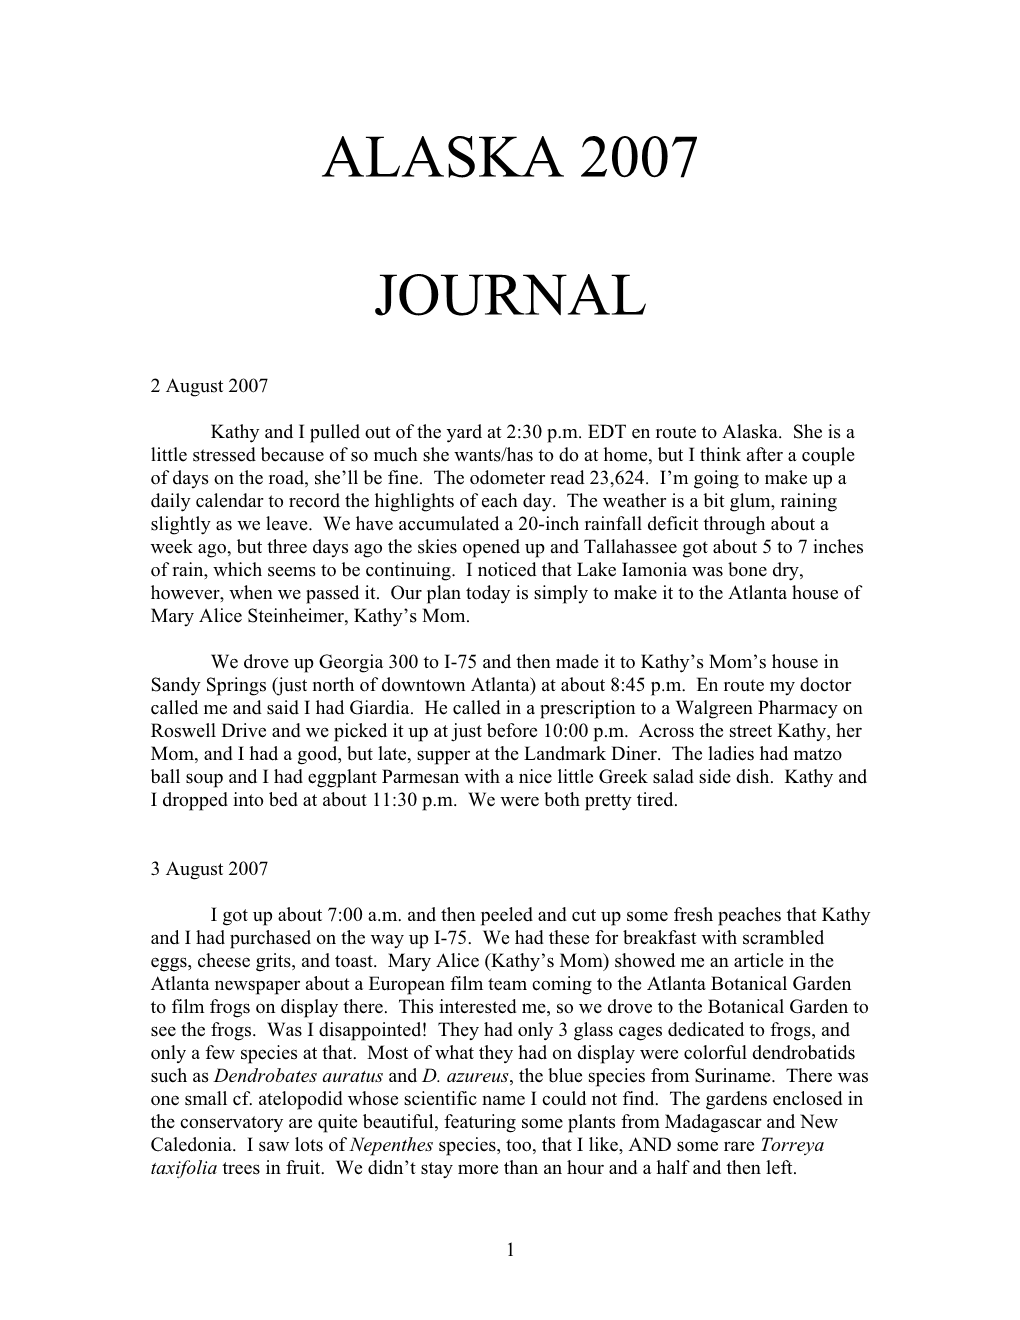 Alaska Journal 2007